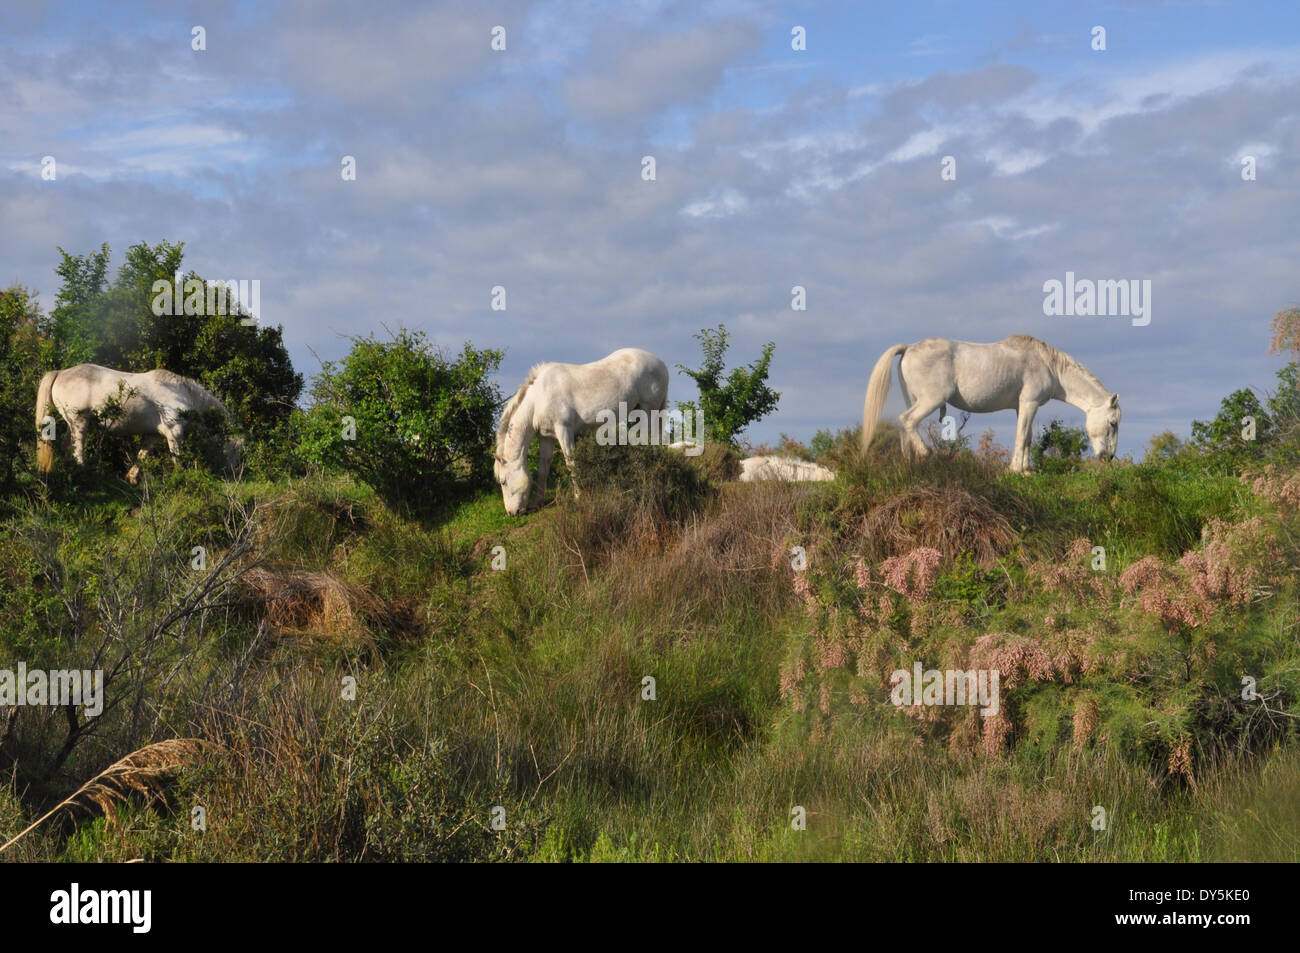 Trois chevaux blancs, ancienne race chevaline originaire de la région de la Camargue dans le sud de la France, le pâturage. Banque D'Images